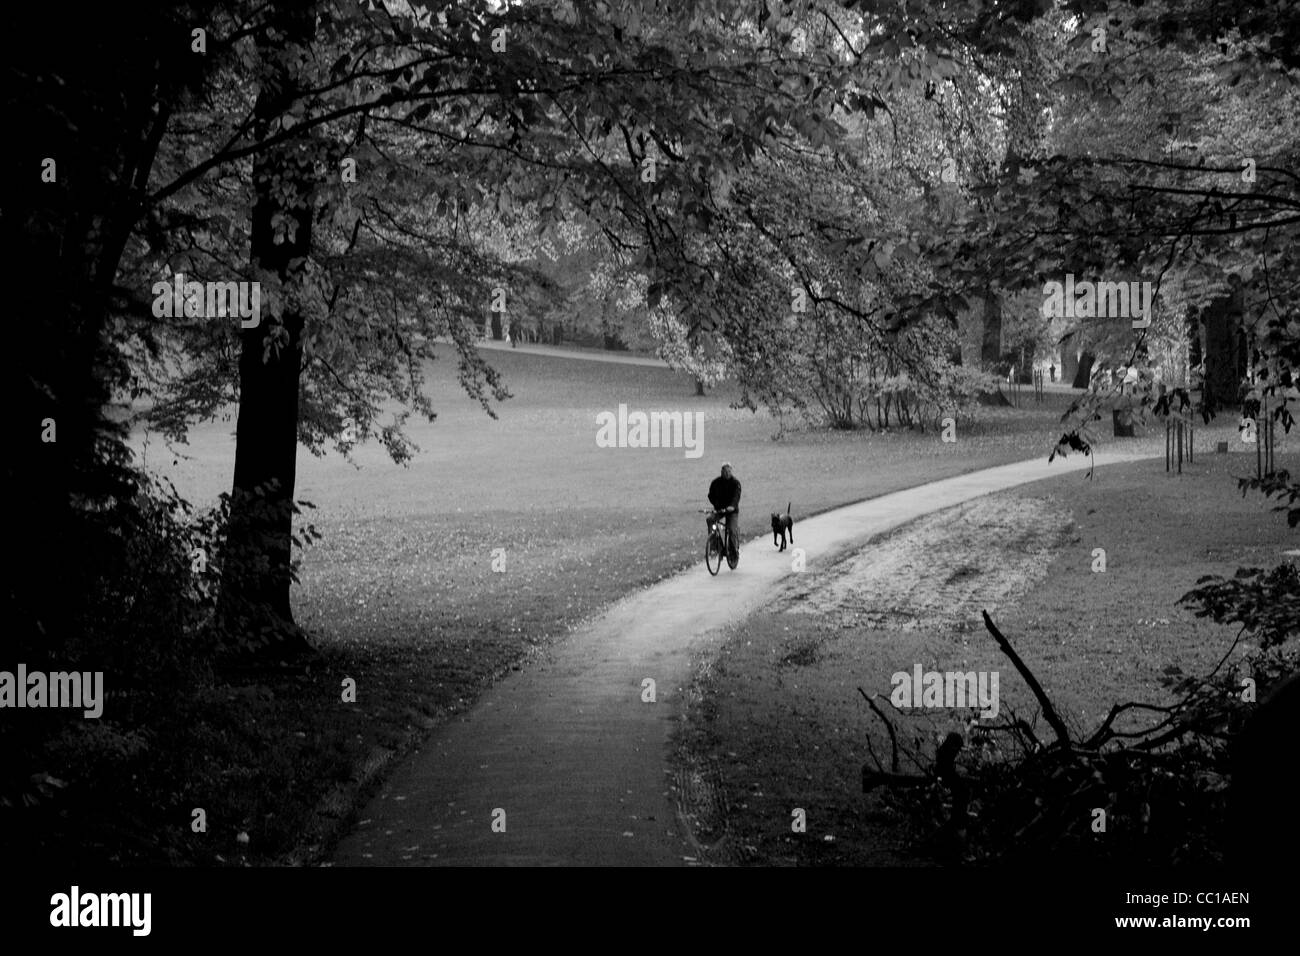 Photo en noir et blanc d'un homme monté sur sa bicyclette, son chien qui court à ses côtés, sur un chemin à travers un parc à l'automne. Banque D'Images